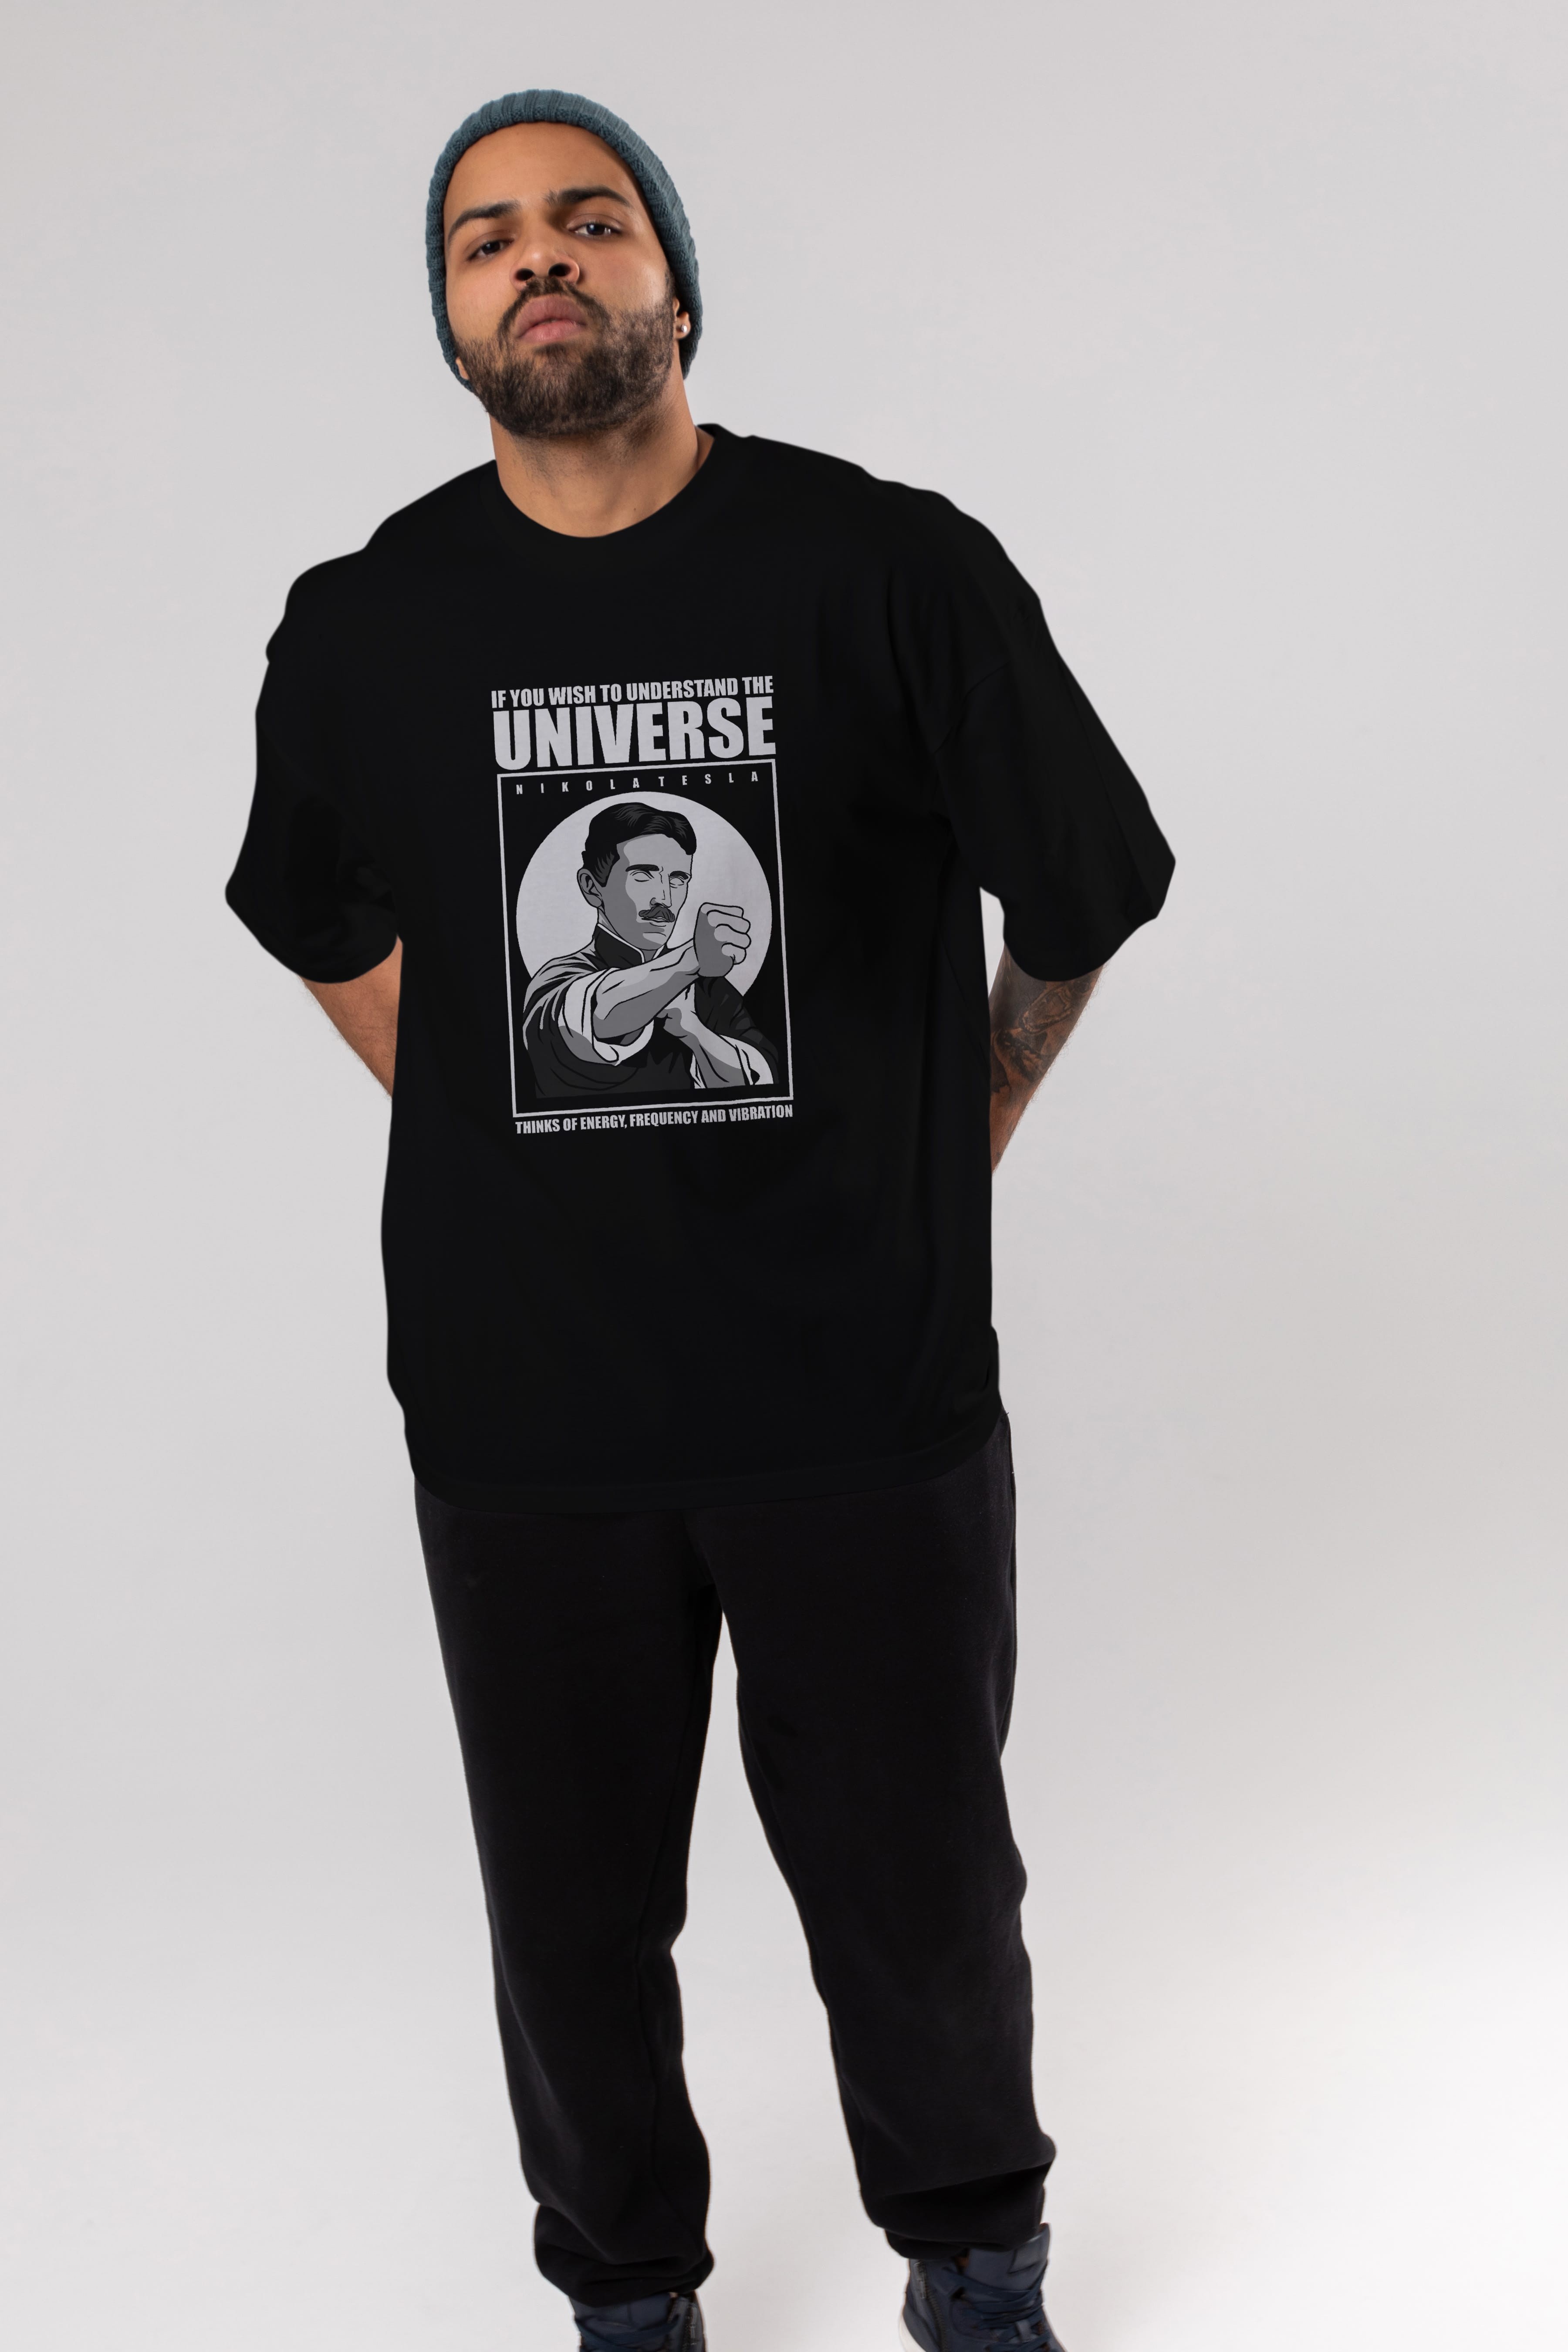 Nicola Tesla Ip Man Ön Baskılı Oversize t-shirt Erkek Kadın Unisex %100 Pamuk tişort